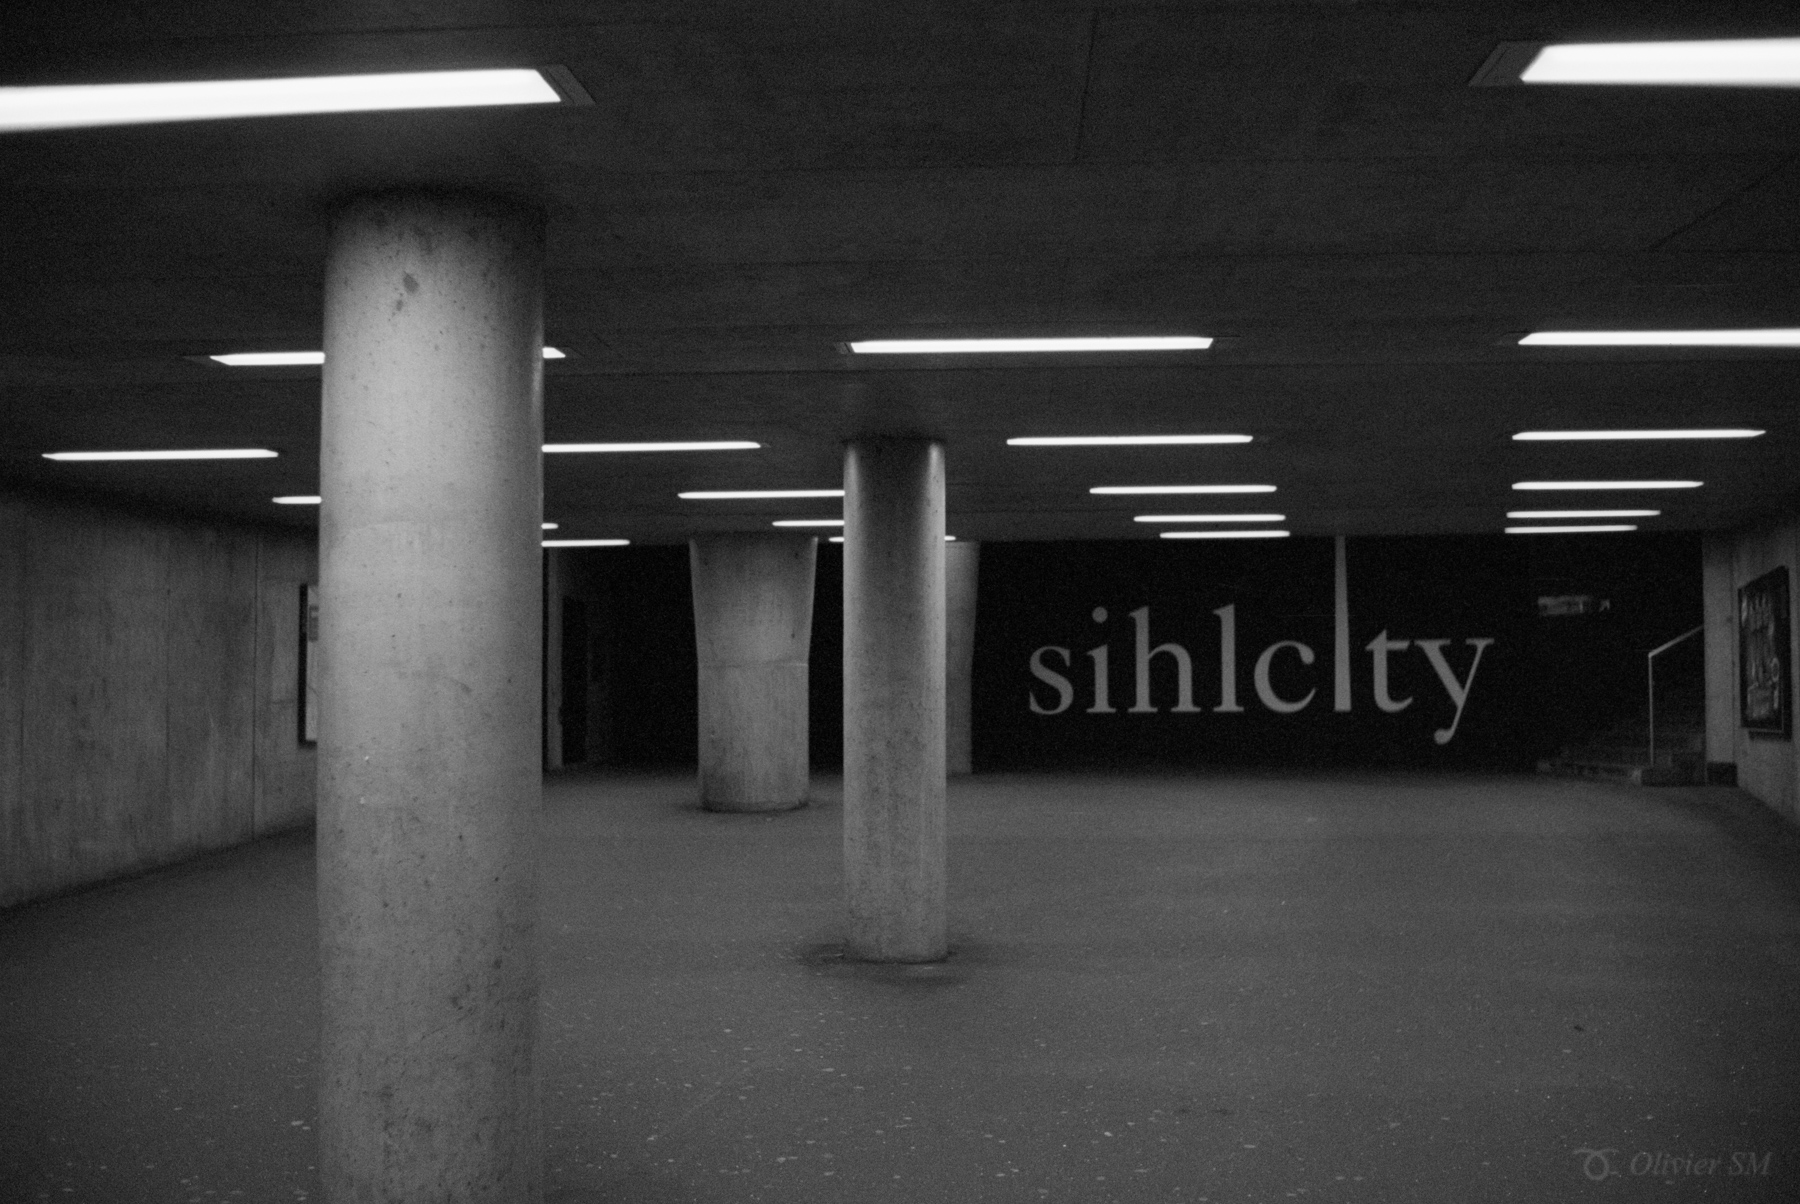 Underground SihlCity | Voigtländer Bessa R3M | Nokton 35mm 1.4 SC | Kodak Tri-X 400